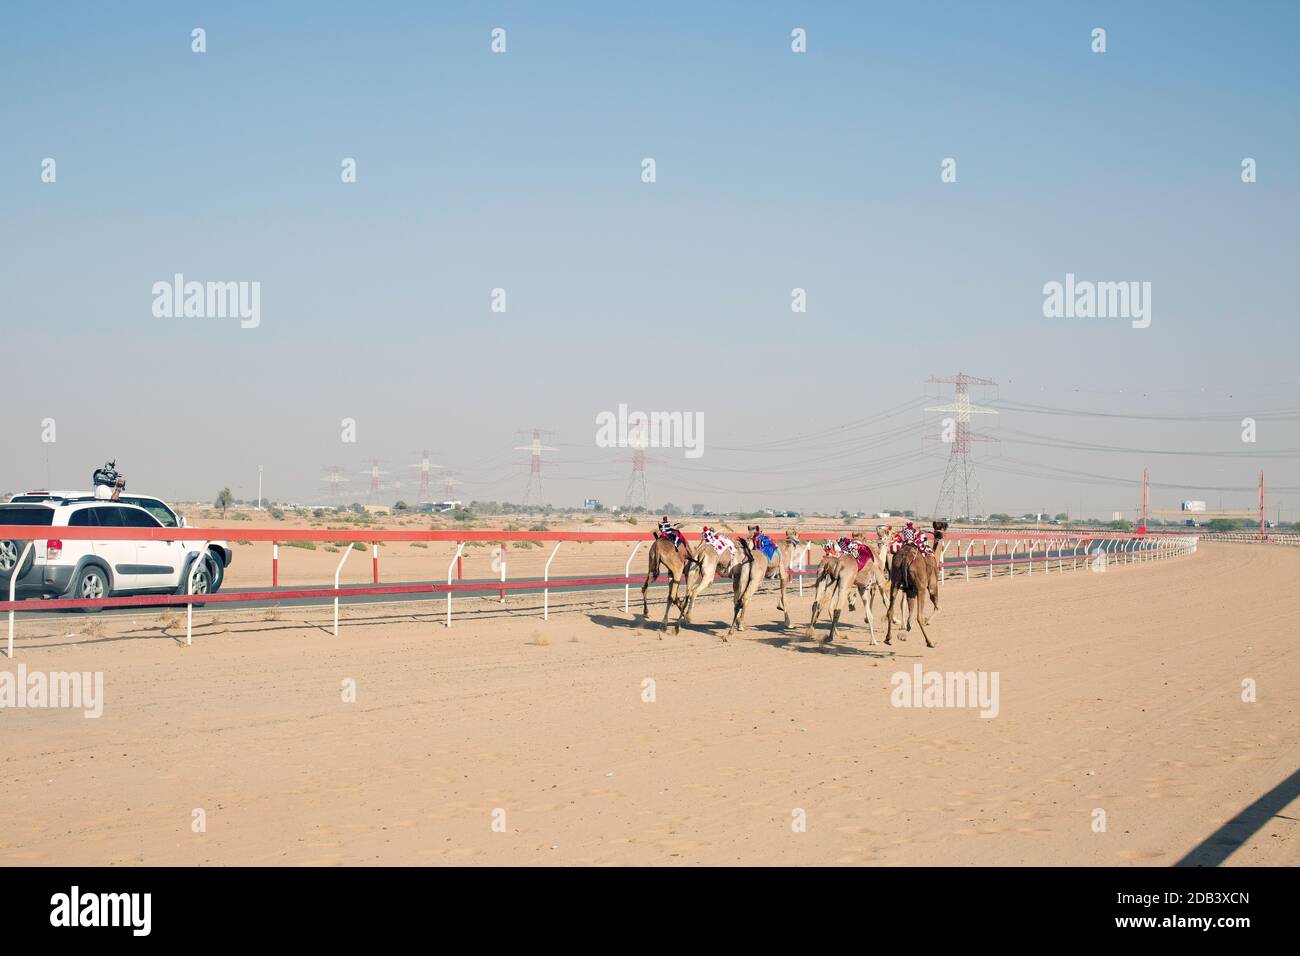 Emirats Arabes Unis / Al Dhaid / la voiture se déplace le long des chameaux tandis que la course se déroule, permettant aux propriétaires de dicter la vitesse du fouet du robot. Banque D'Images